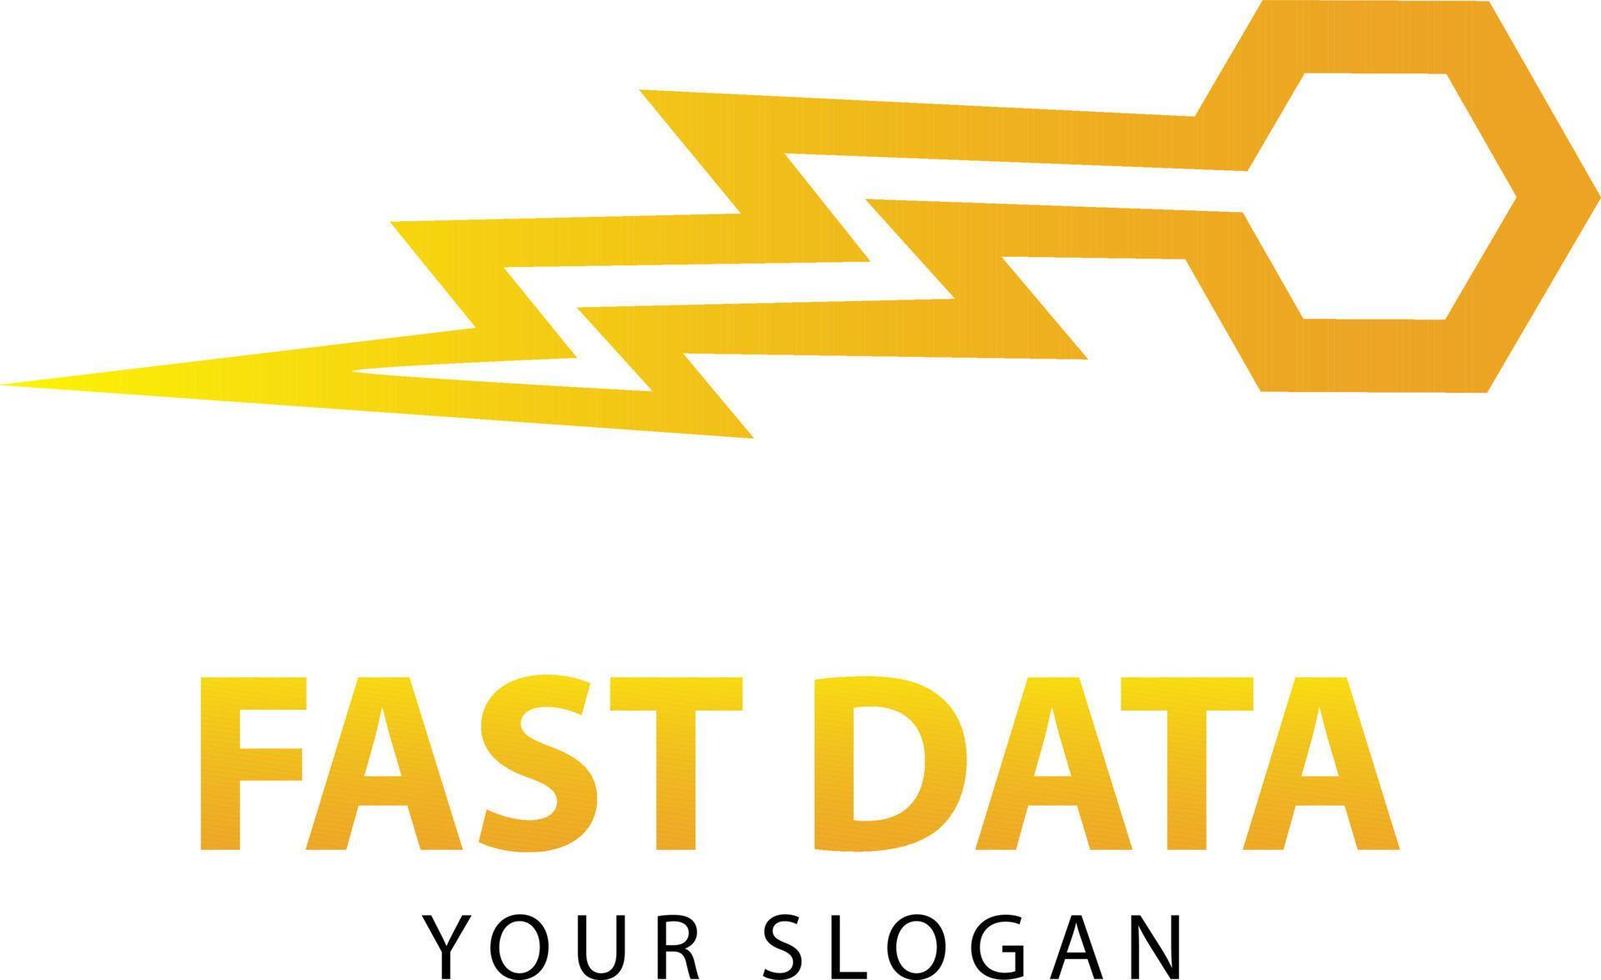 fast data logo. data logo vector